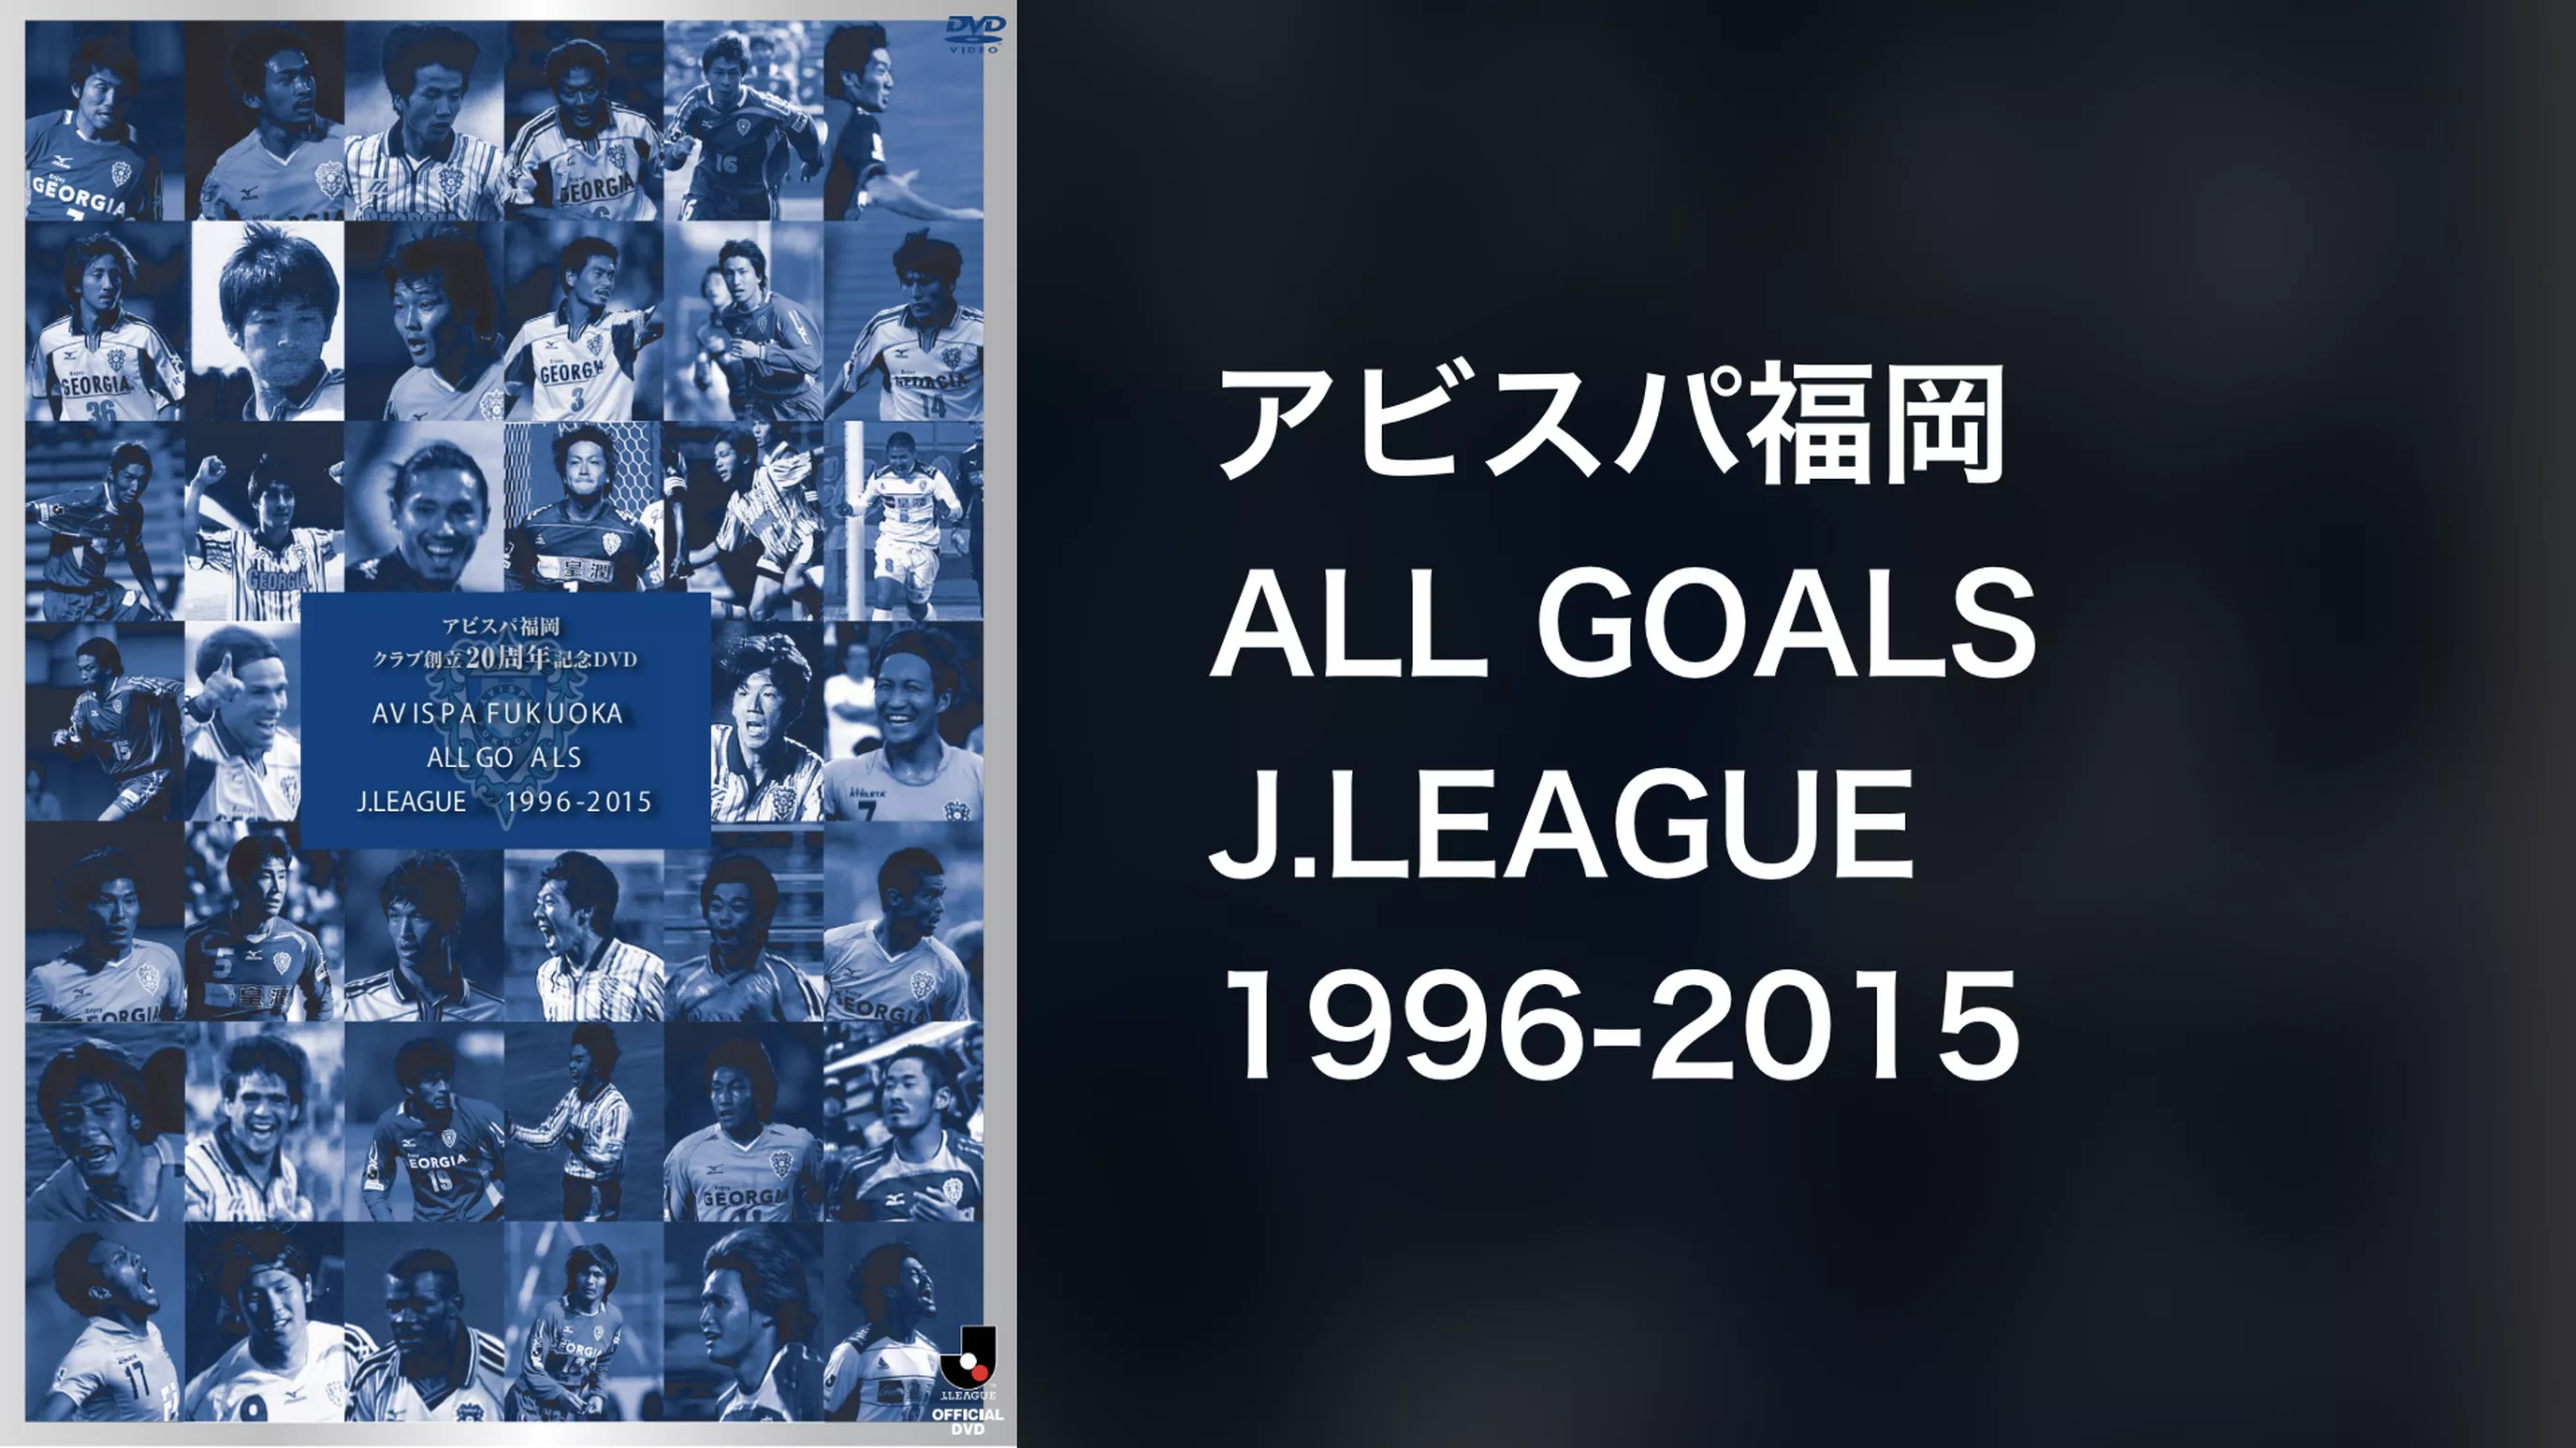 アビスパ福岡 ALL GOALS J.LEAGUE 1996-2015